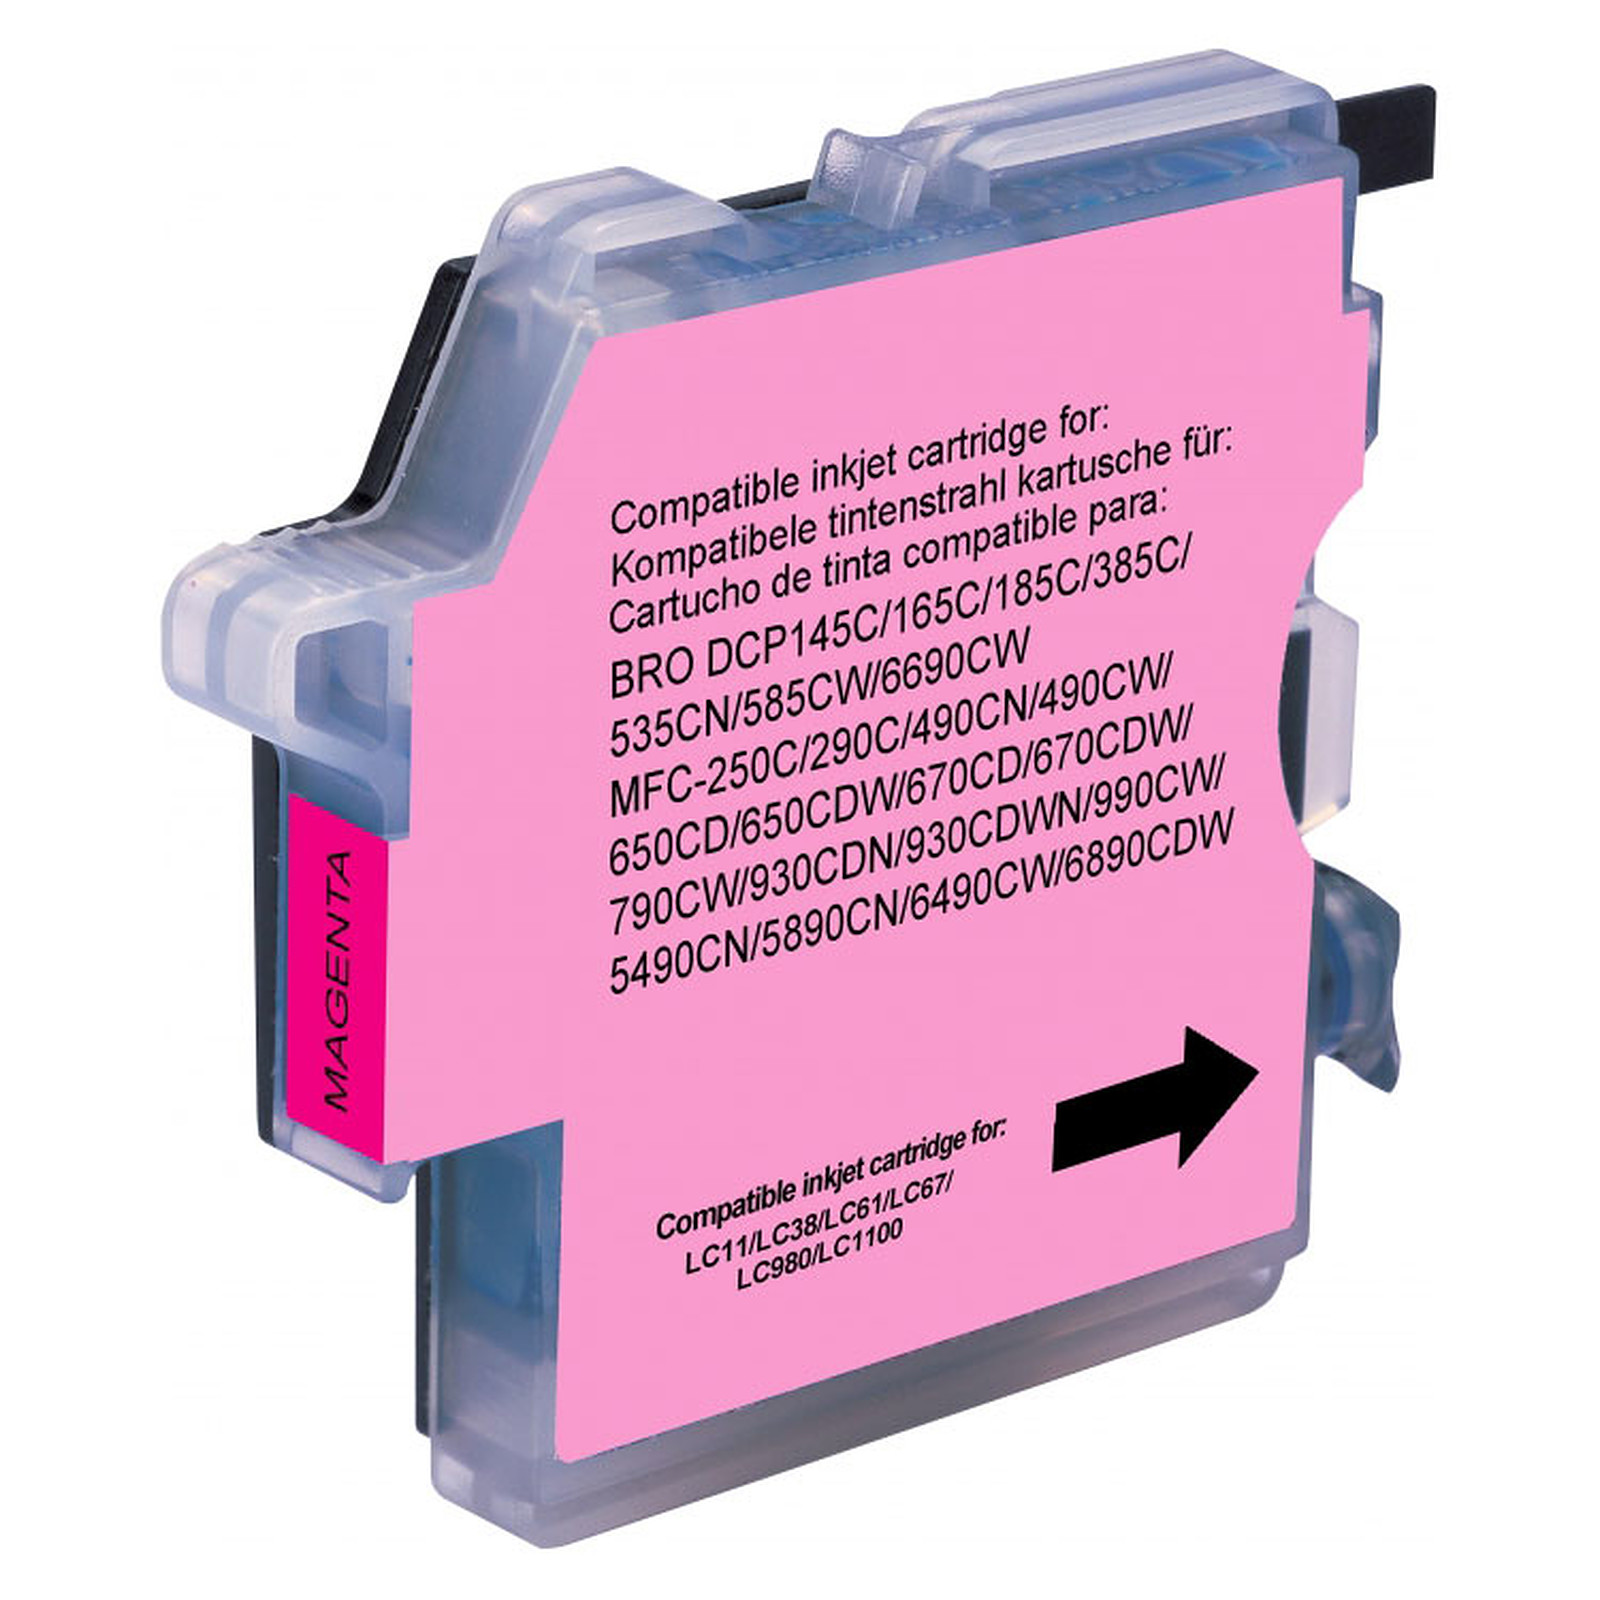 Cartouche compatible LC-980 et LC-1100 (Magenta) - Cartouche imprimante Generique